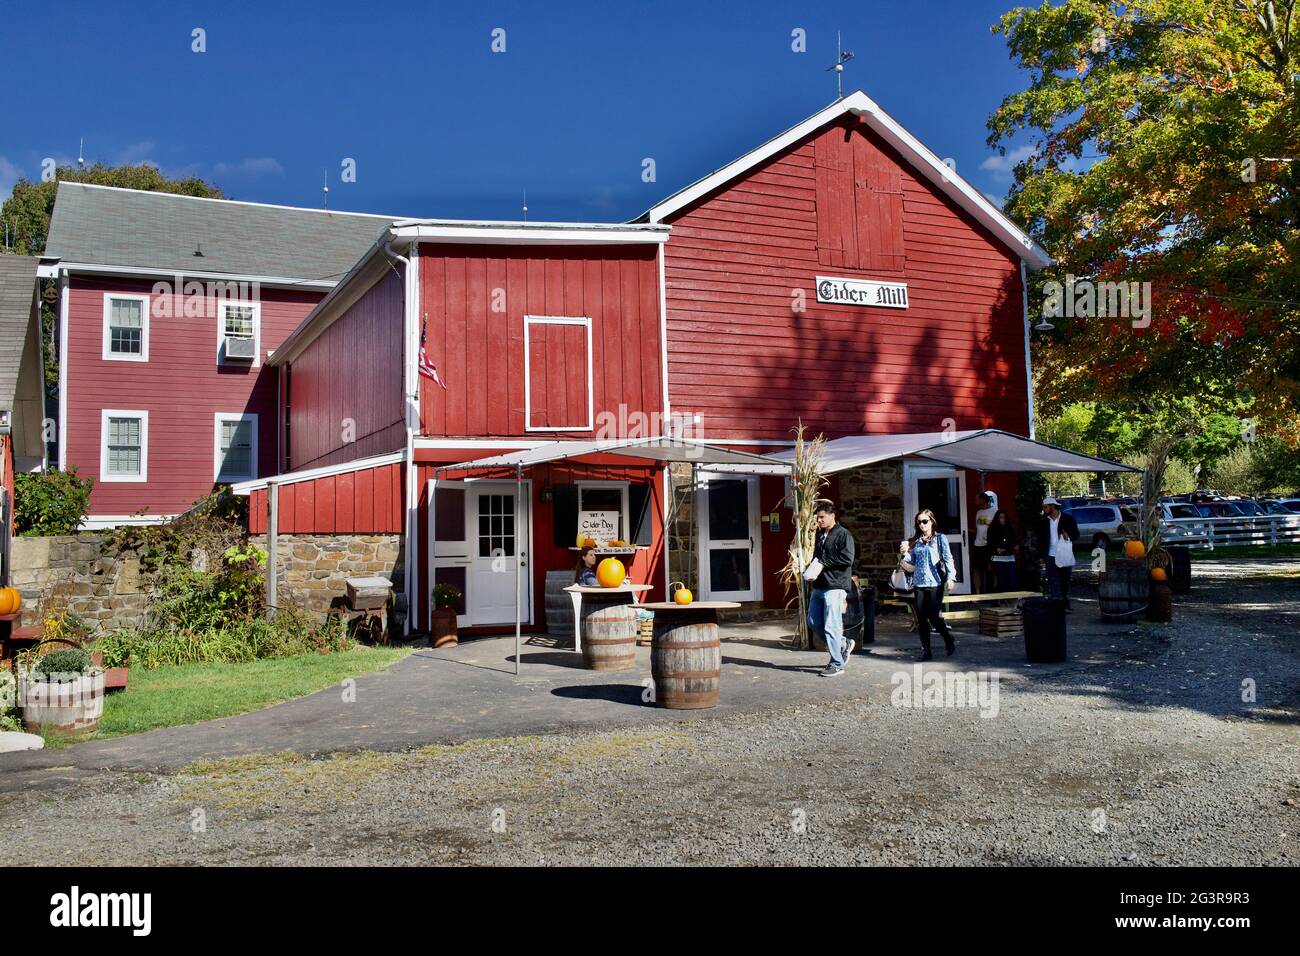 Hacklebarney Farm, Chester, New Jersey, États-Unis. Ferme saisonnière pour les pommes, les citrouilles, le maïs, c'est une ferme de “Pick Your Own” ou de PYO. Banque D'Images